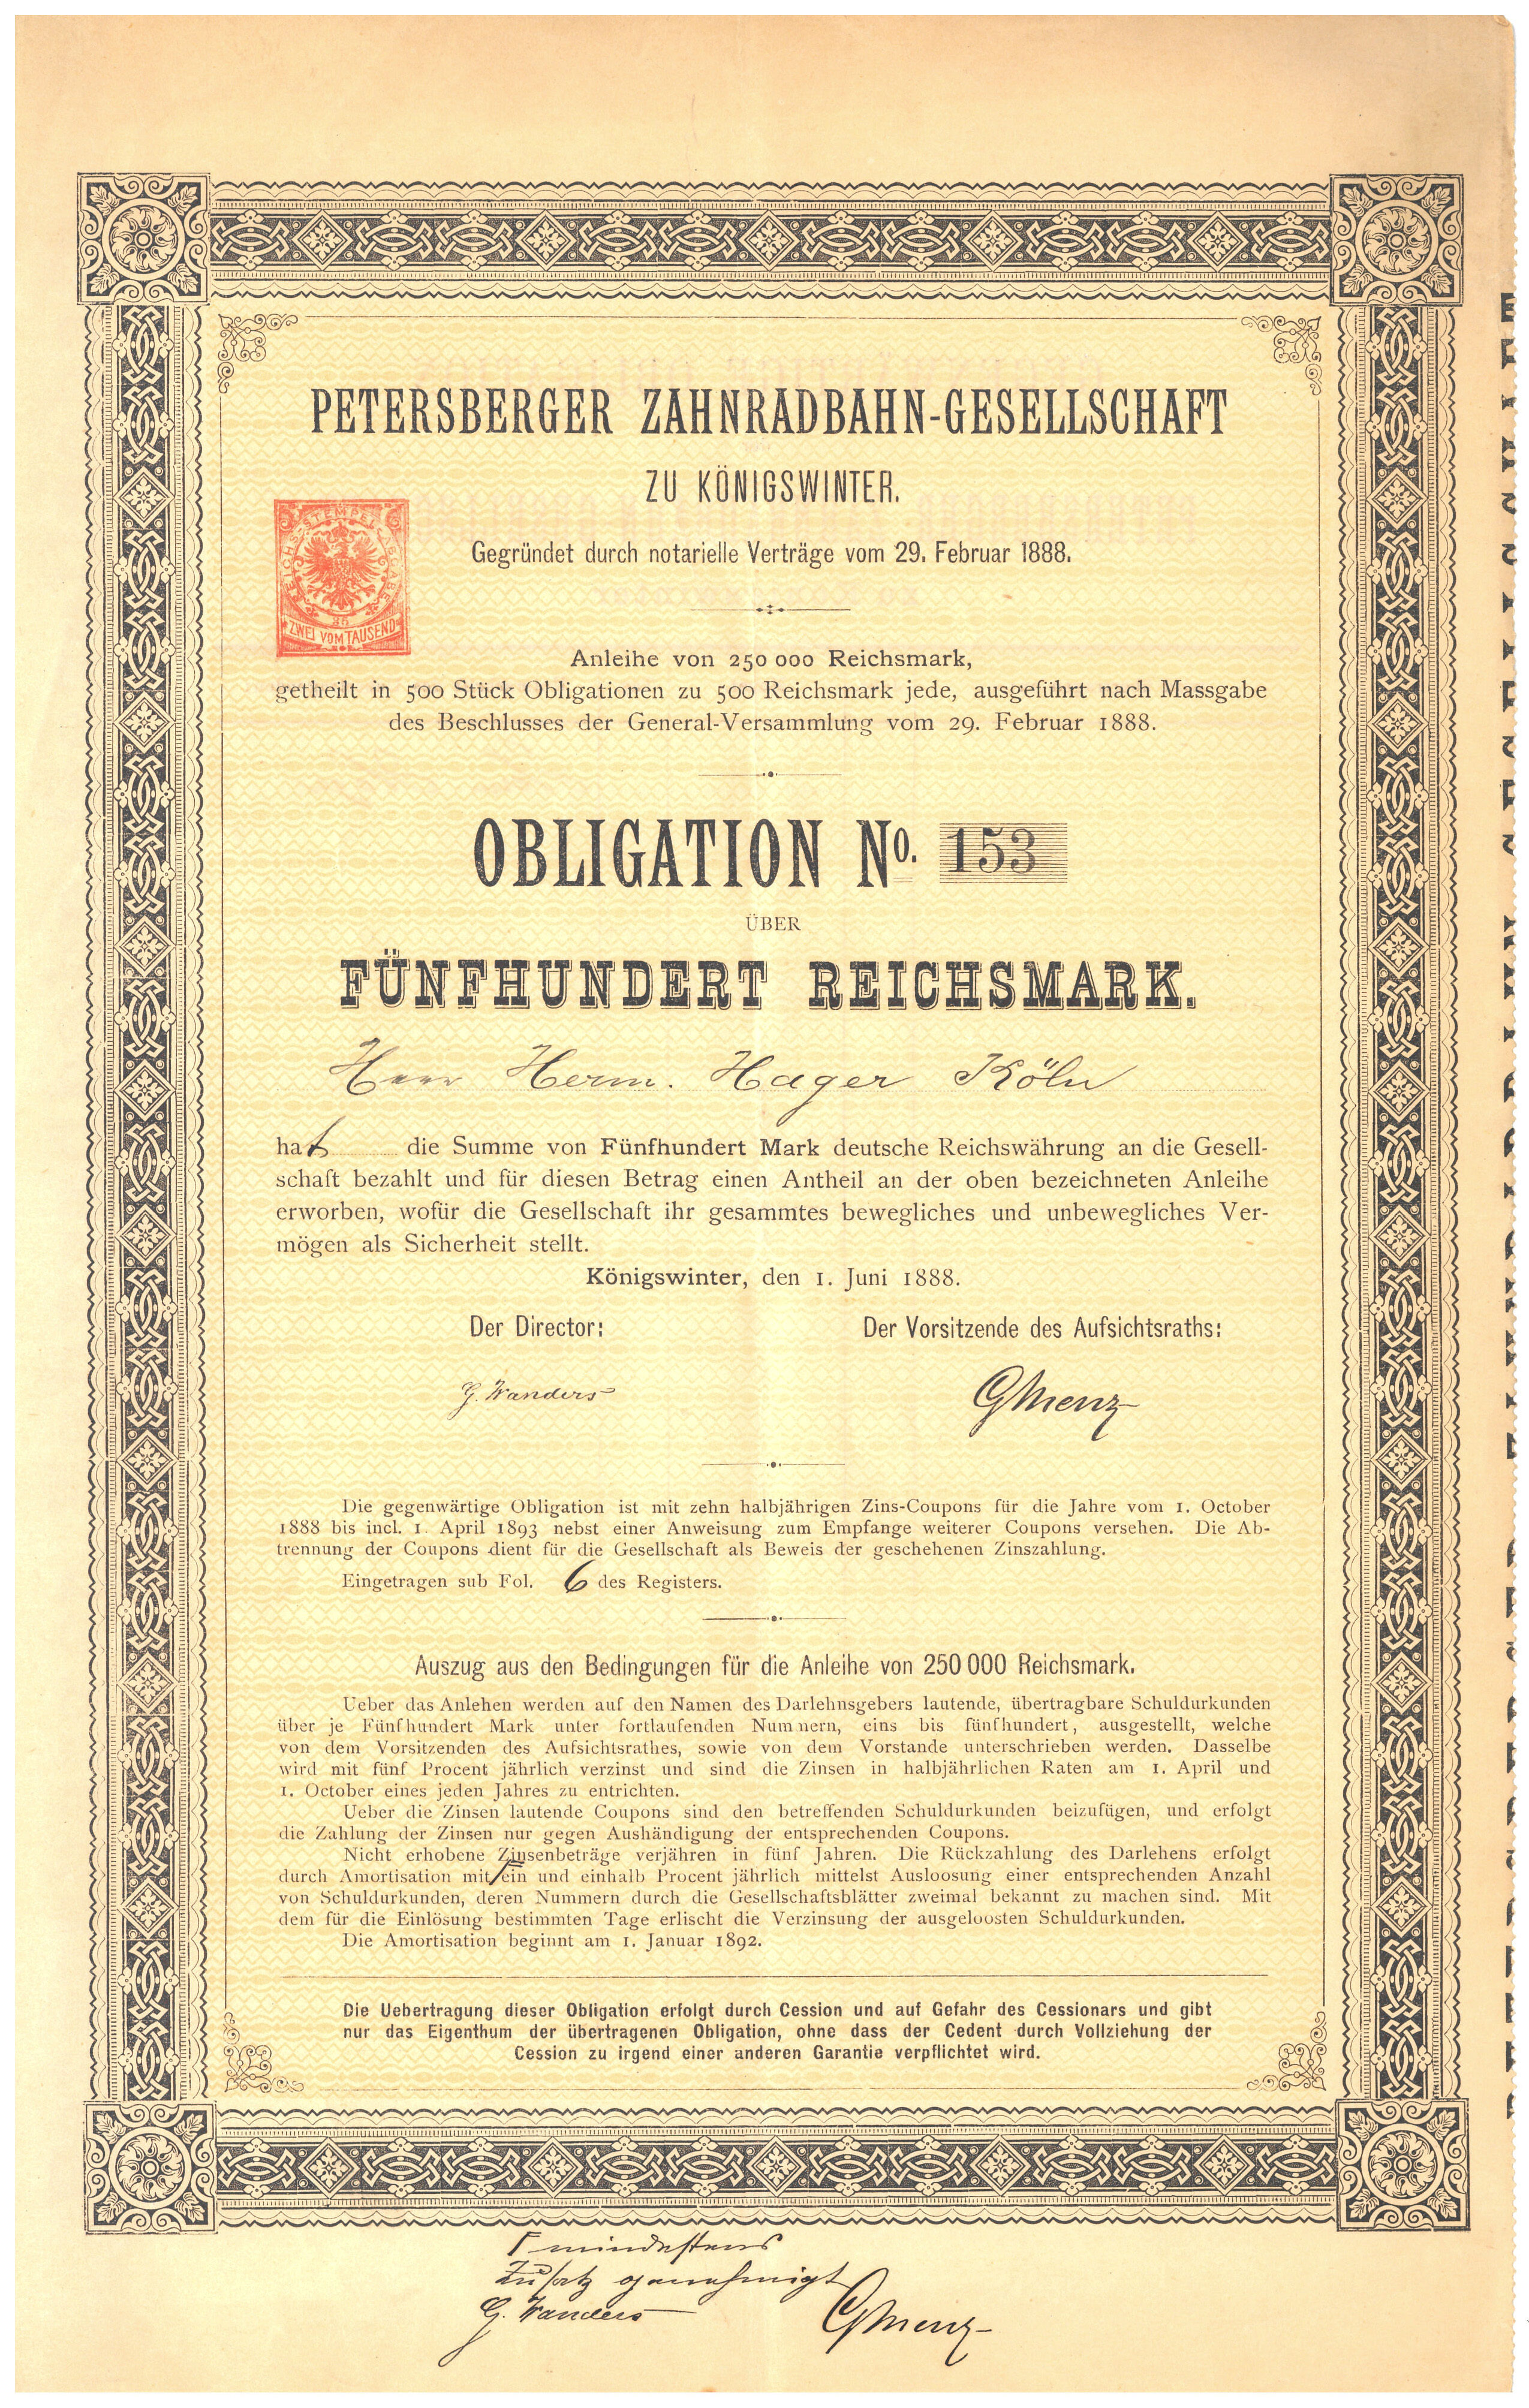 OBLIGATIONSSCHEIN (1888) Um den Bau und den Betrieb der Petersbergbahn zu ermöglichen, gab die Petersberger Zahnradbahn-Gesellschaft Schuldscheine heraus, deren Rückzahlungen die Bilanzen belasteten.